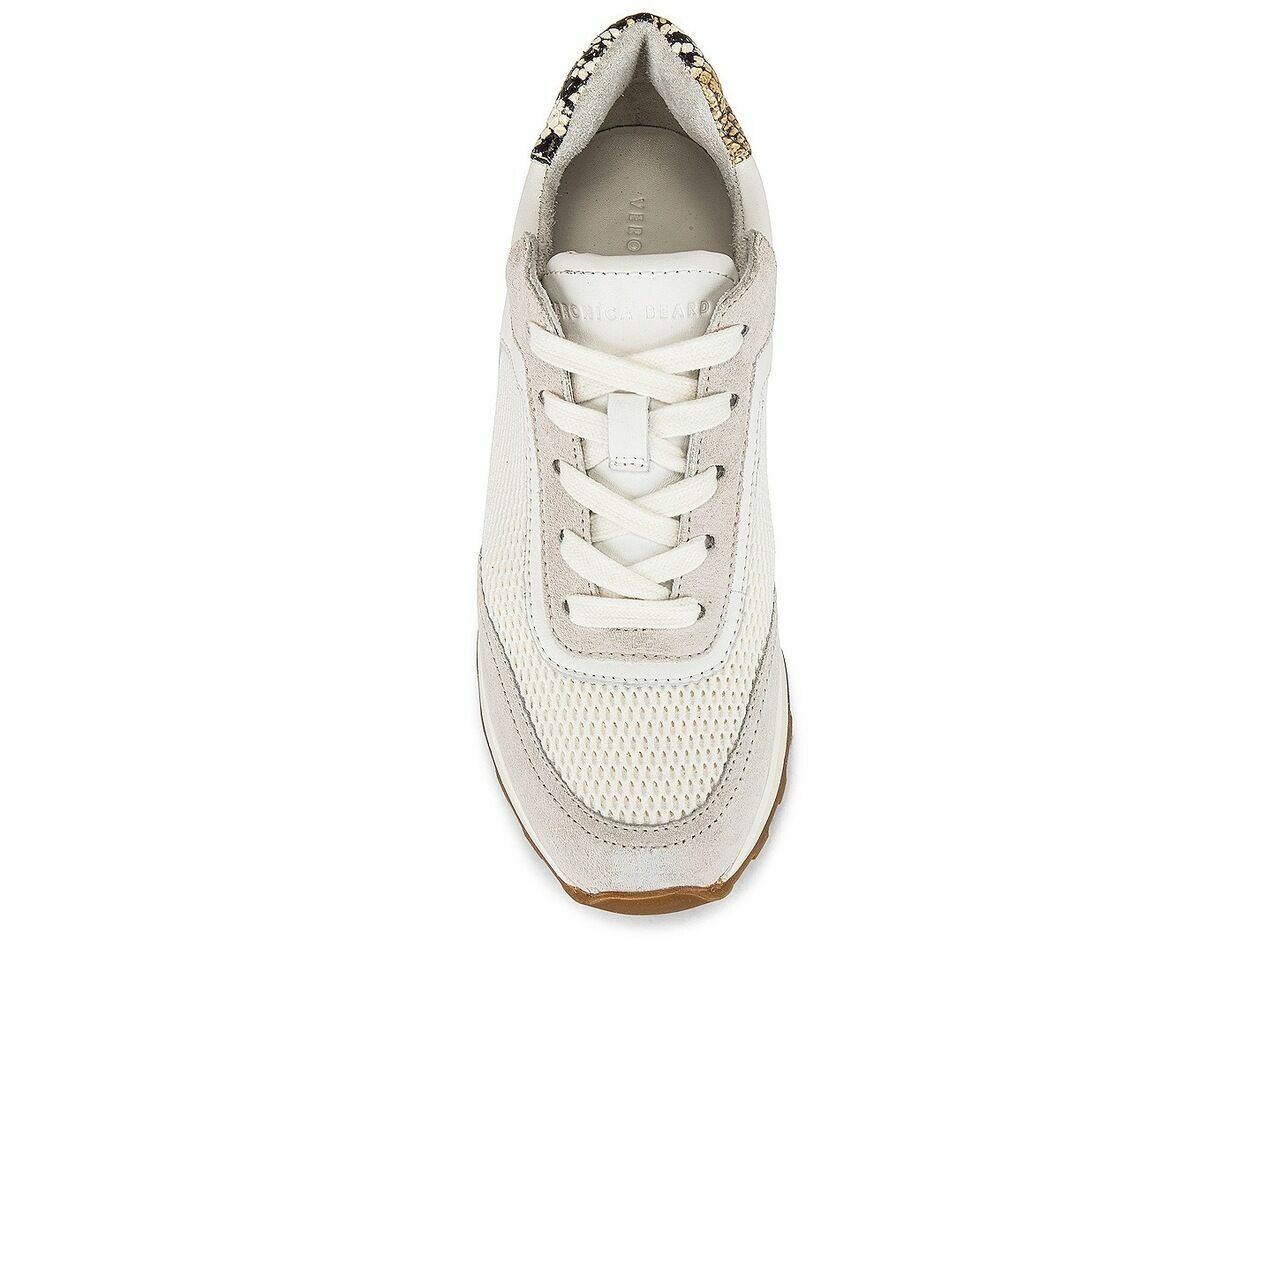 Veronica Beard White Sneakers